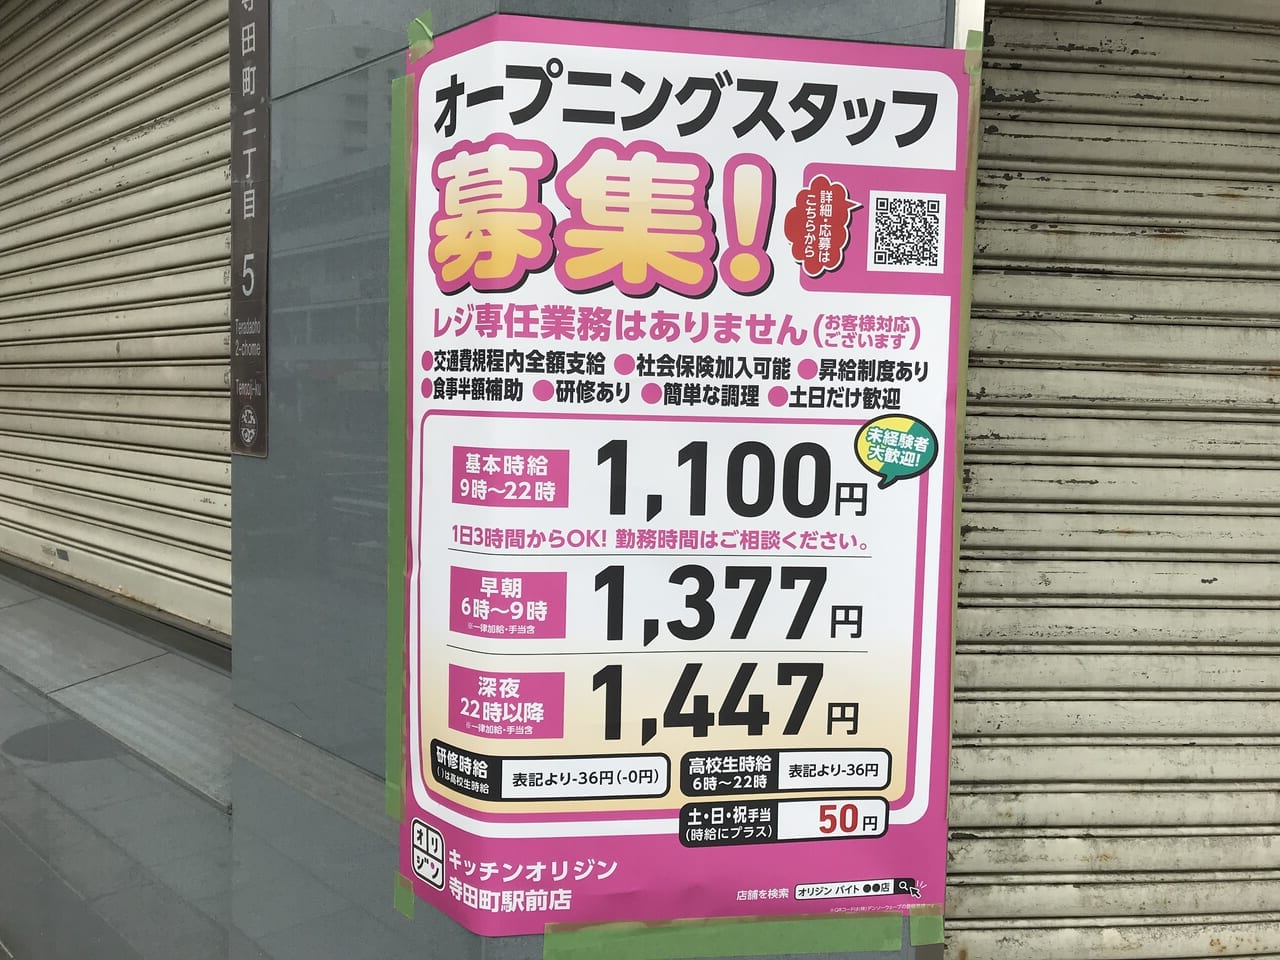 キッチンオリジン寺田町駅前店の求人貼り紙